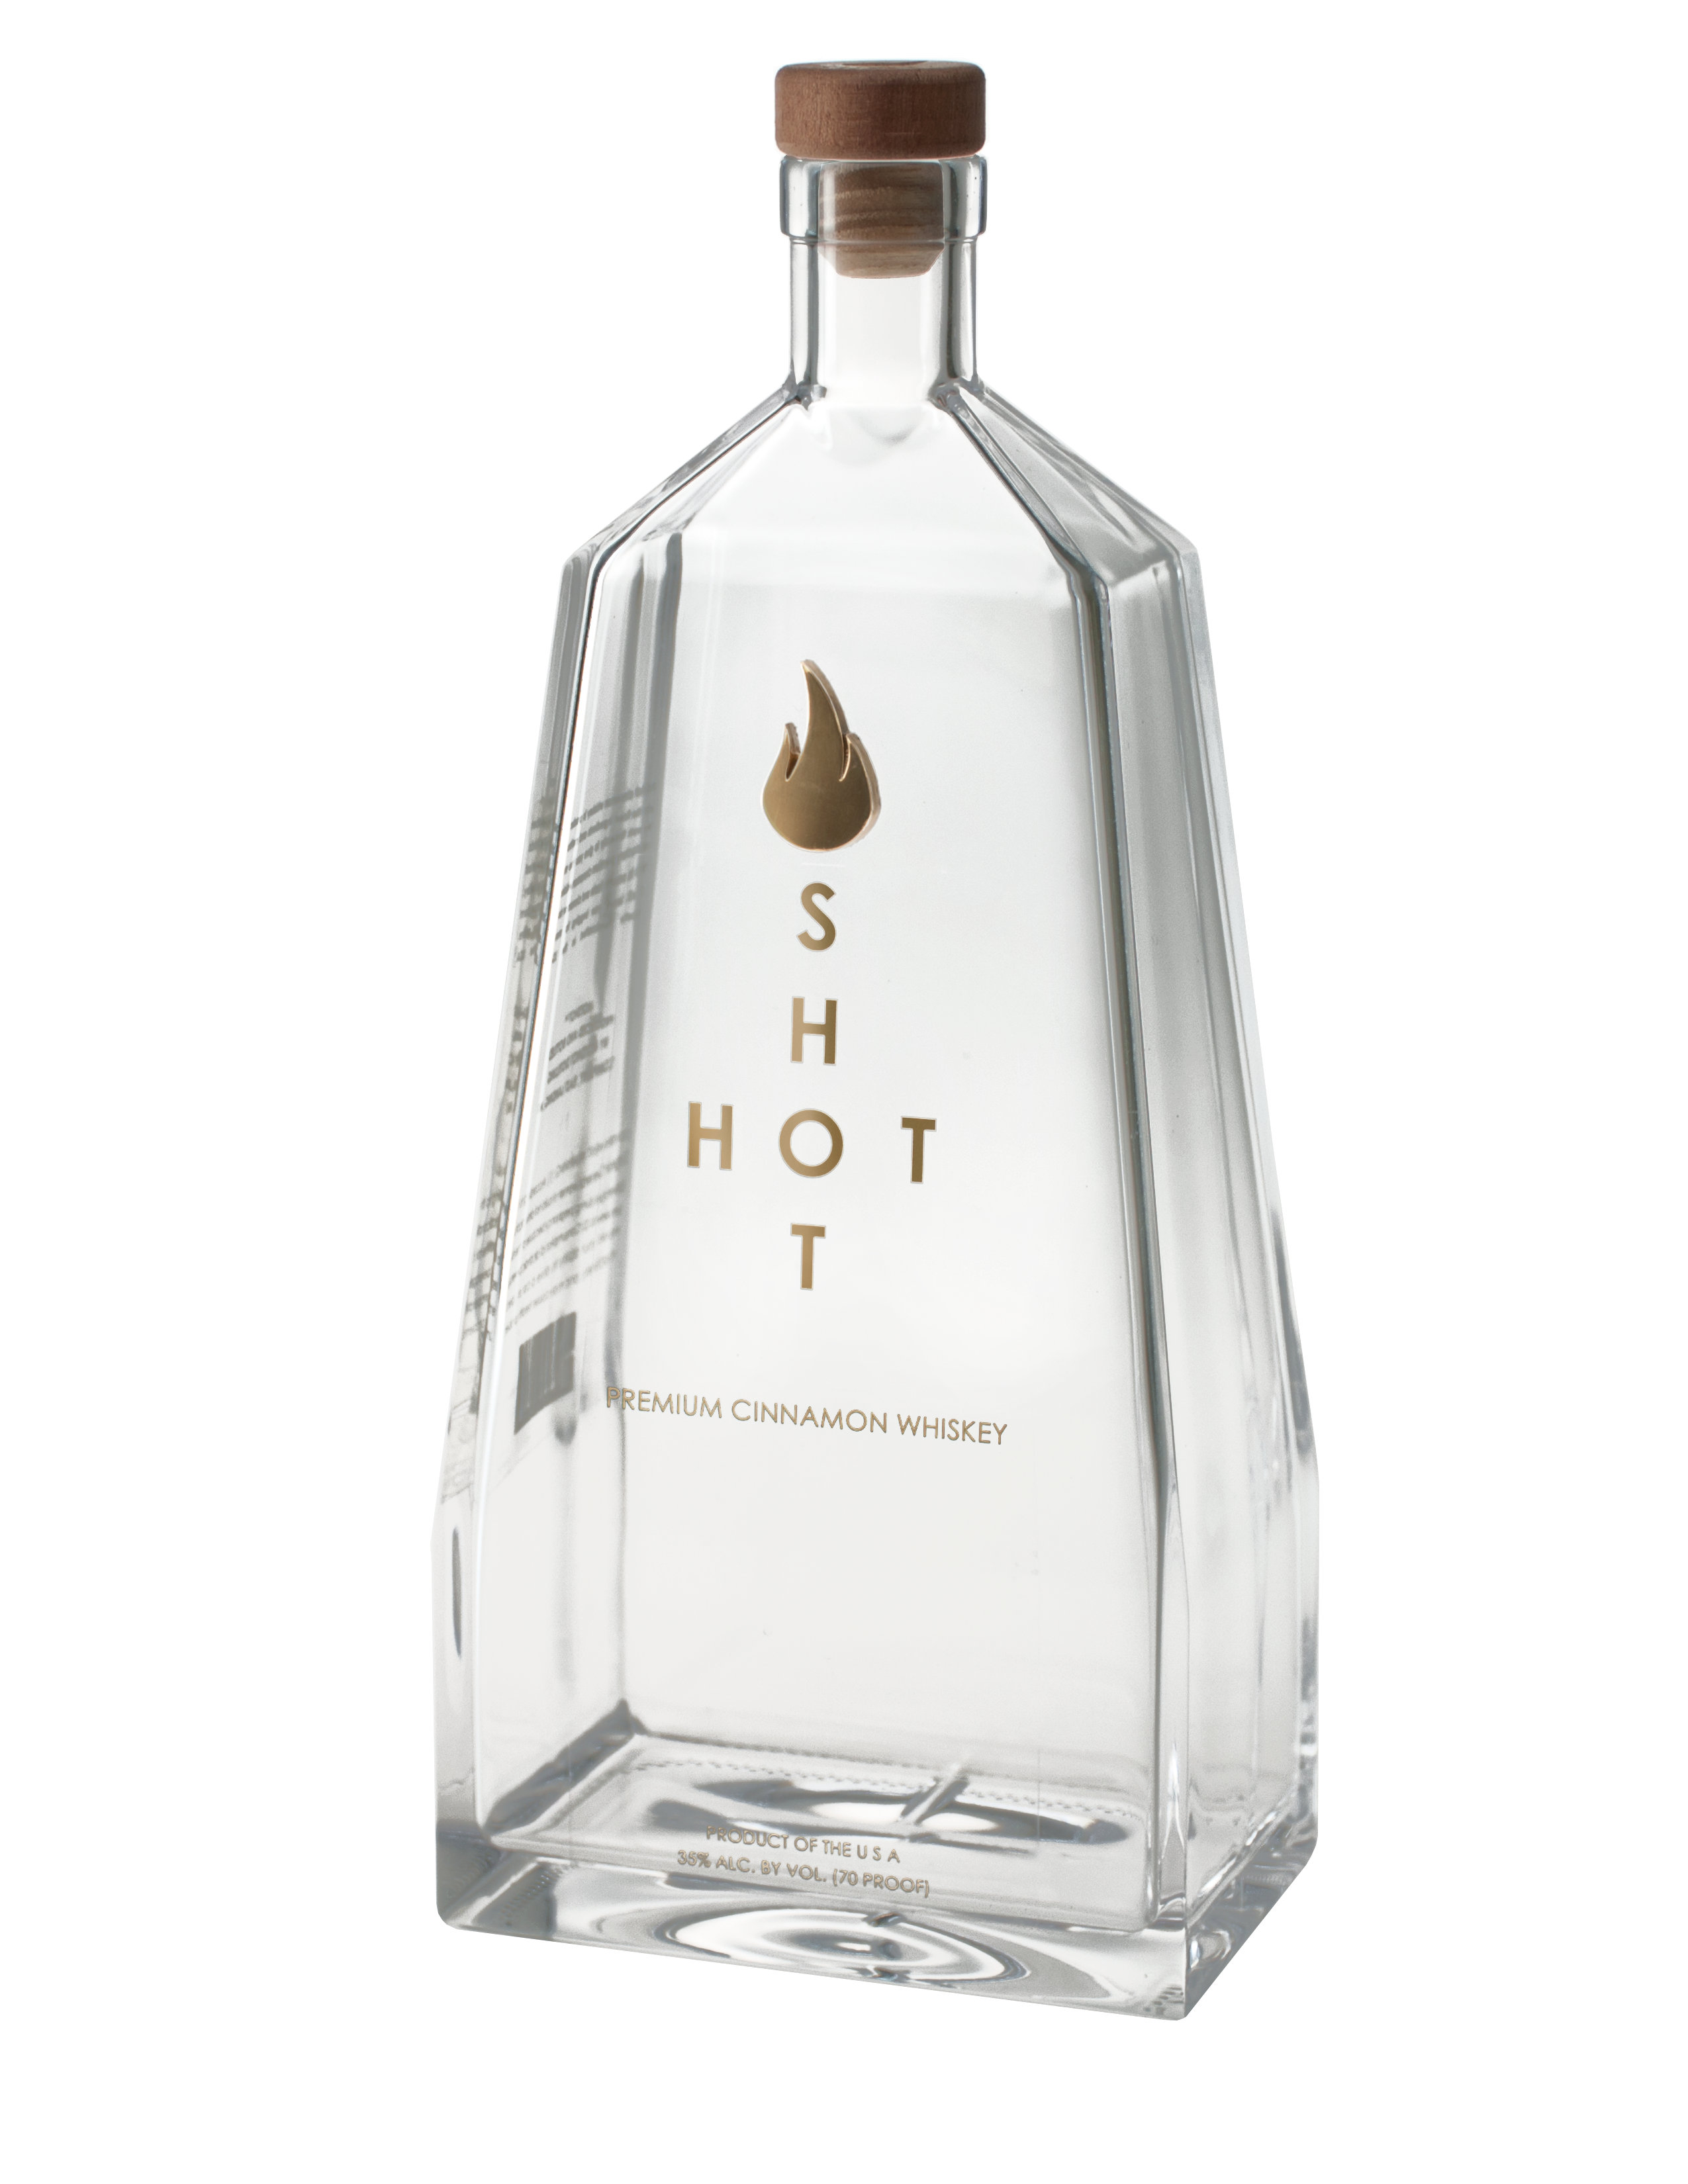 HotShot Bottle Label side